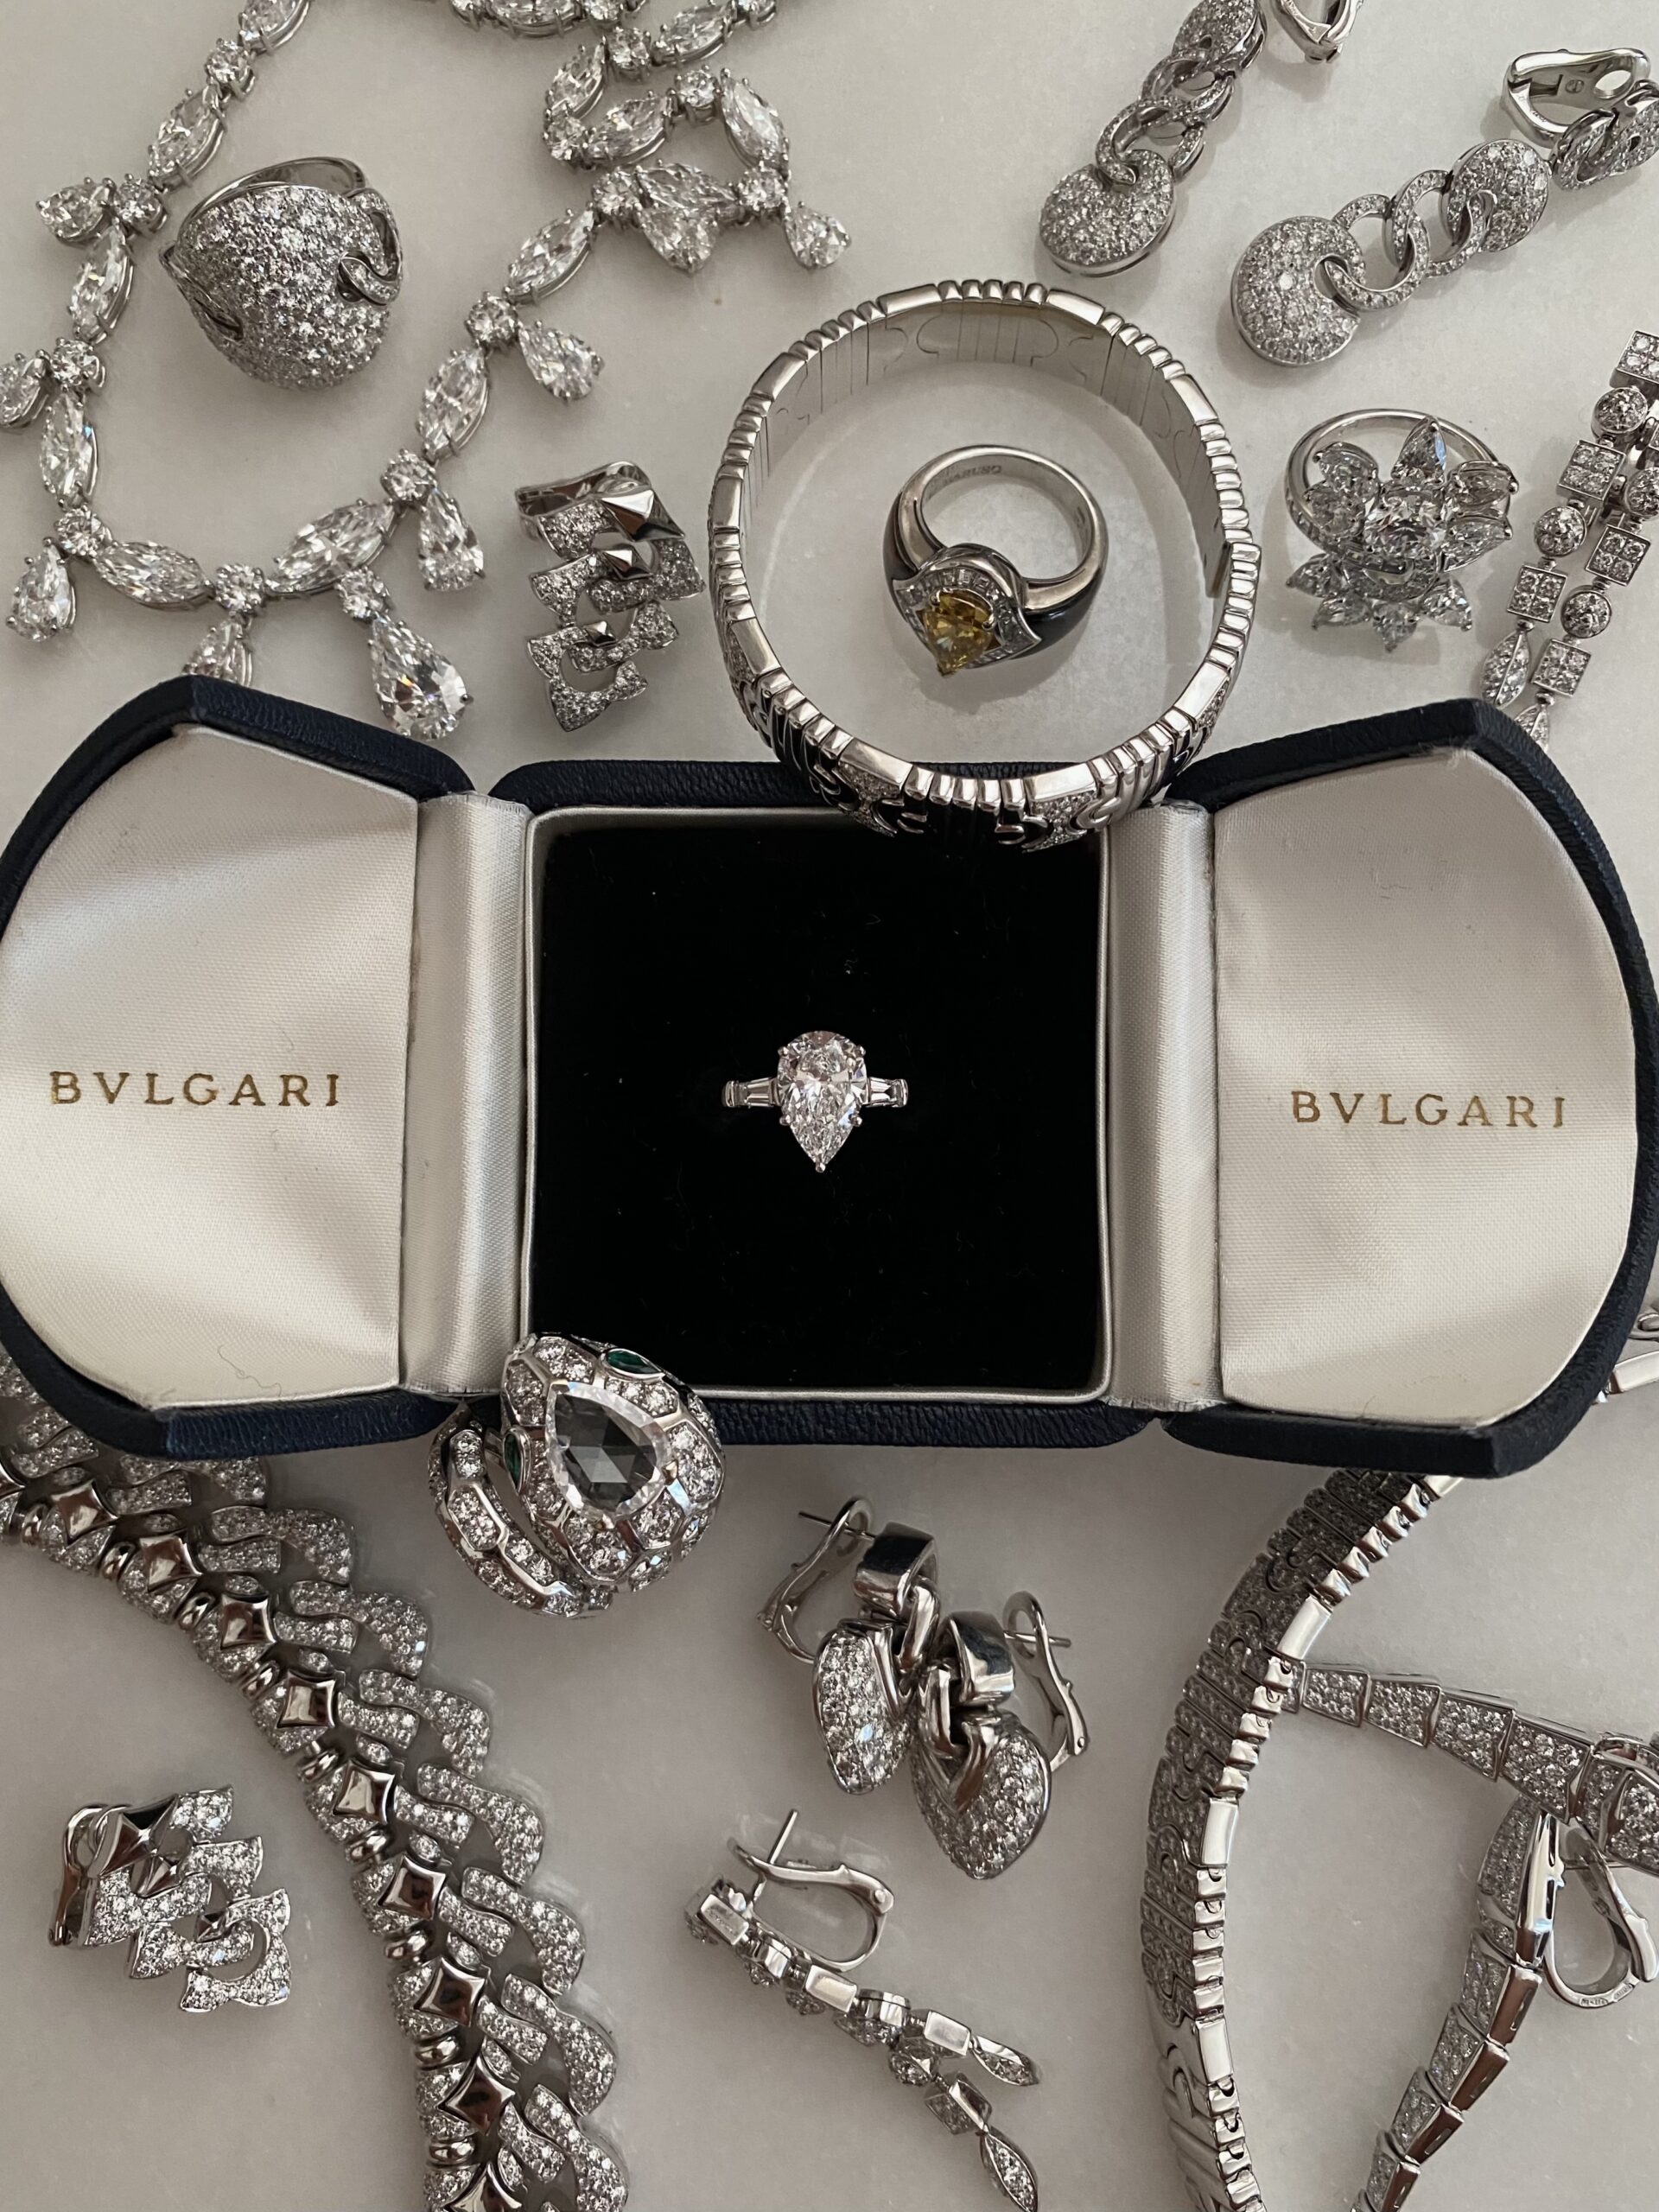 BVLGARI white gold / platinum & diamond jewels